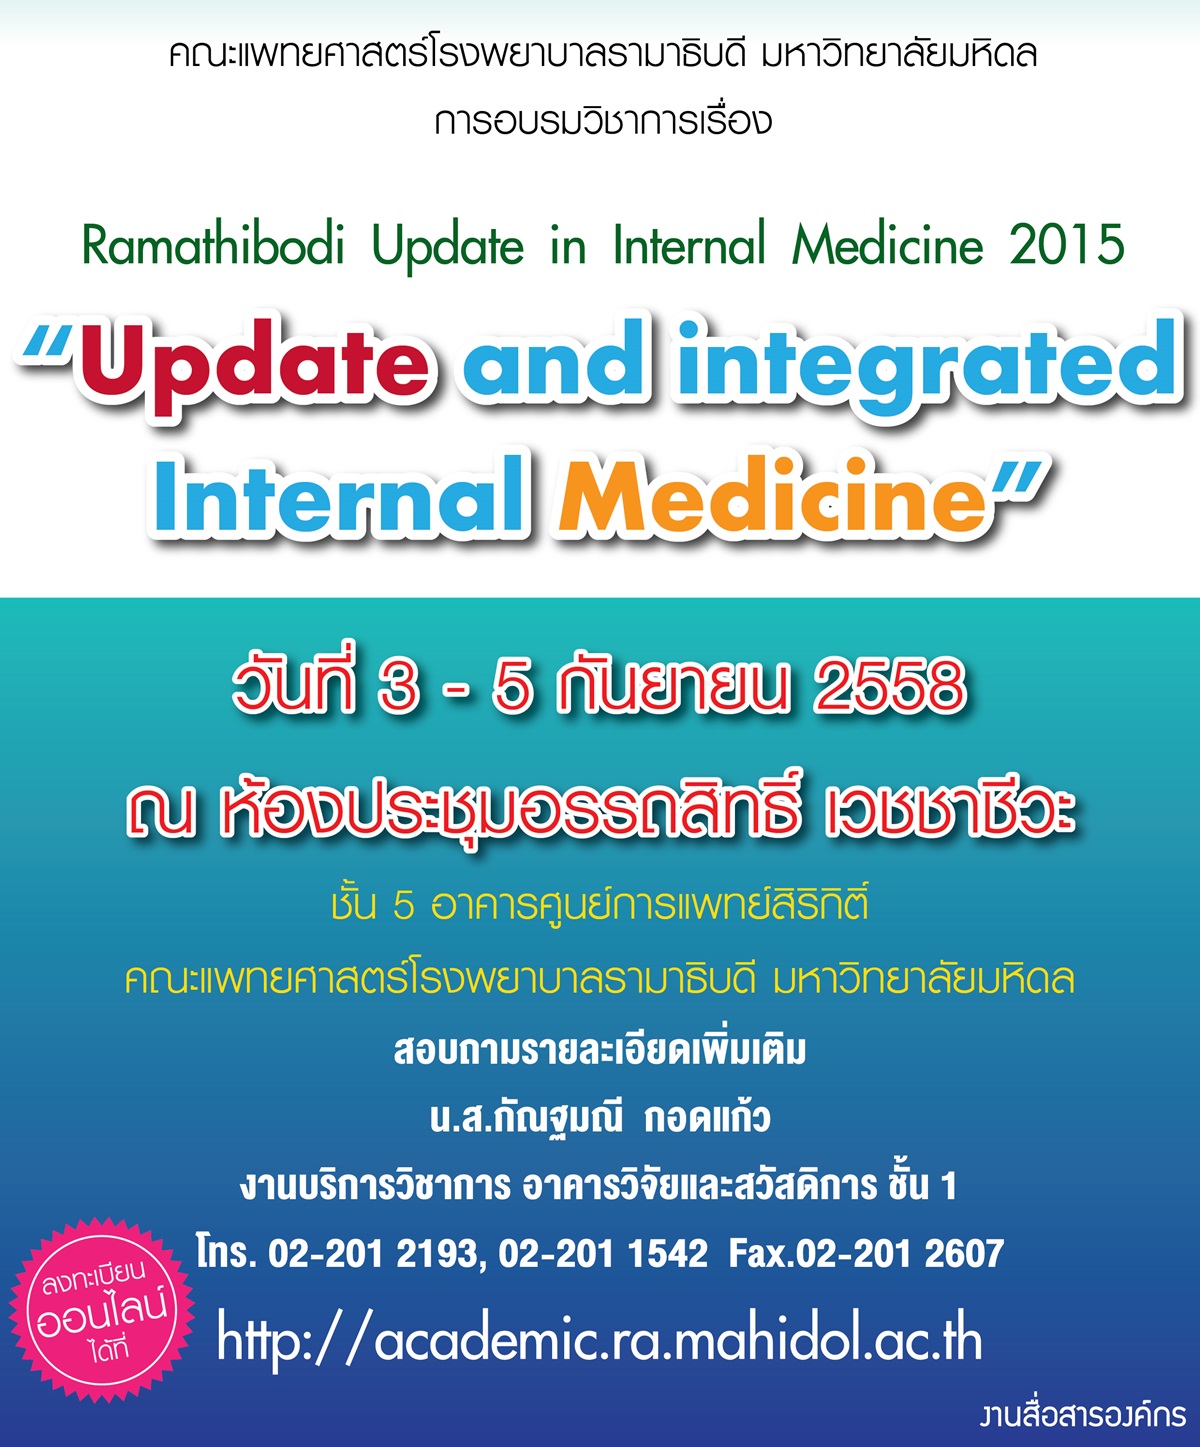 Ramathibodi Update in Internal Medicine 2015 “Update and integrated Internal Medicine”